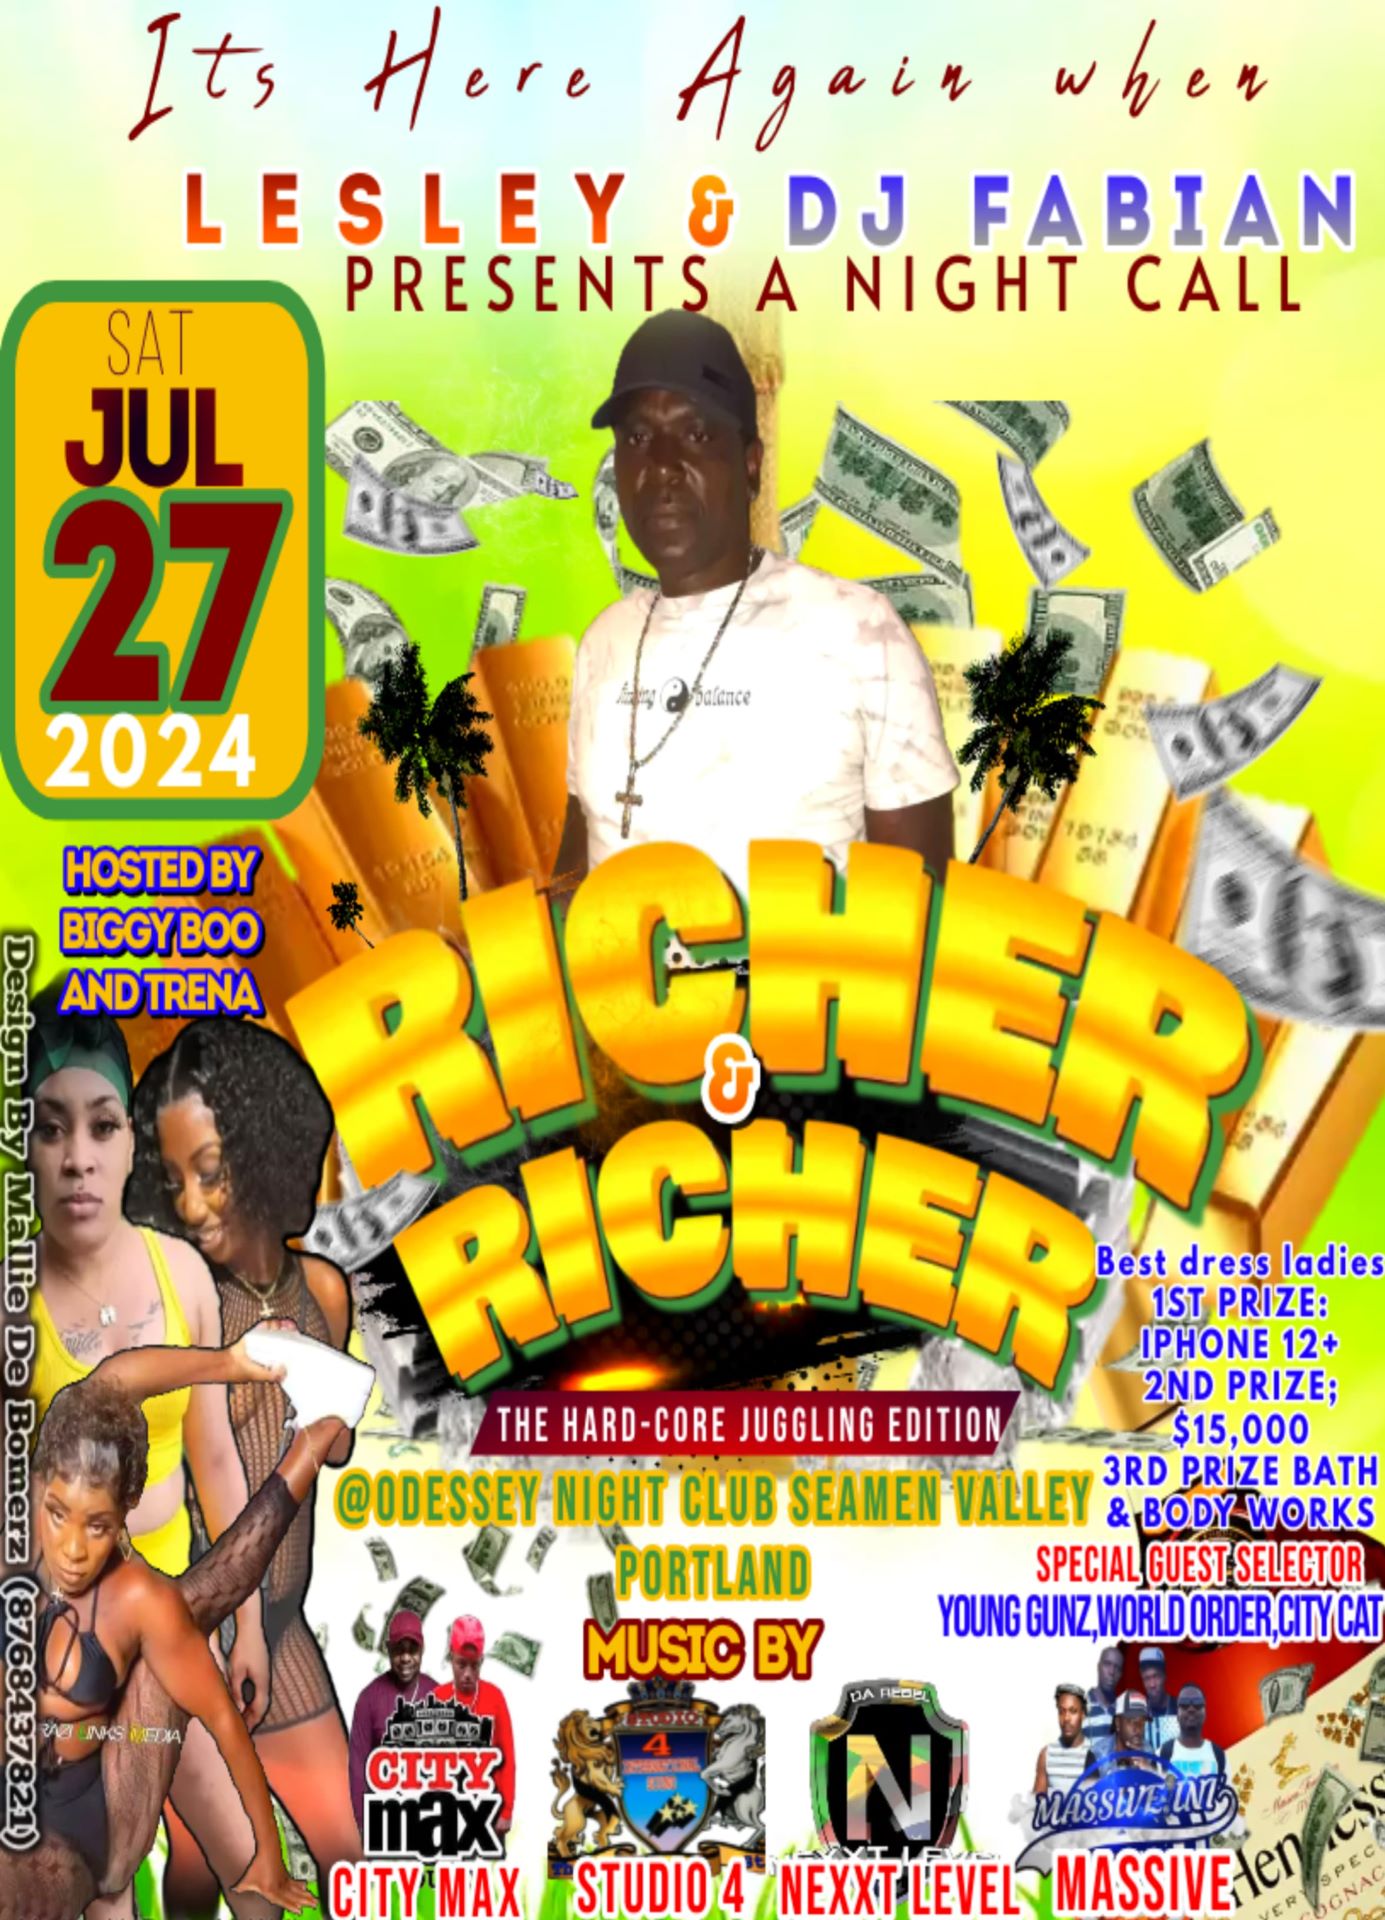 Richer & Richer | Sat. July 27, 2024 | @odessey Night Club Seamen Valley Portland |